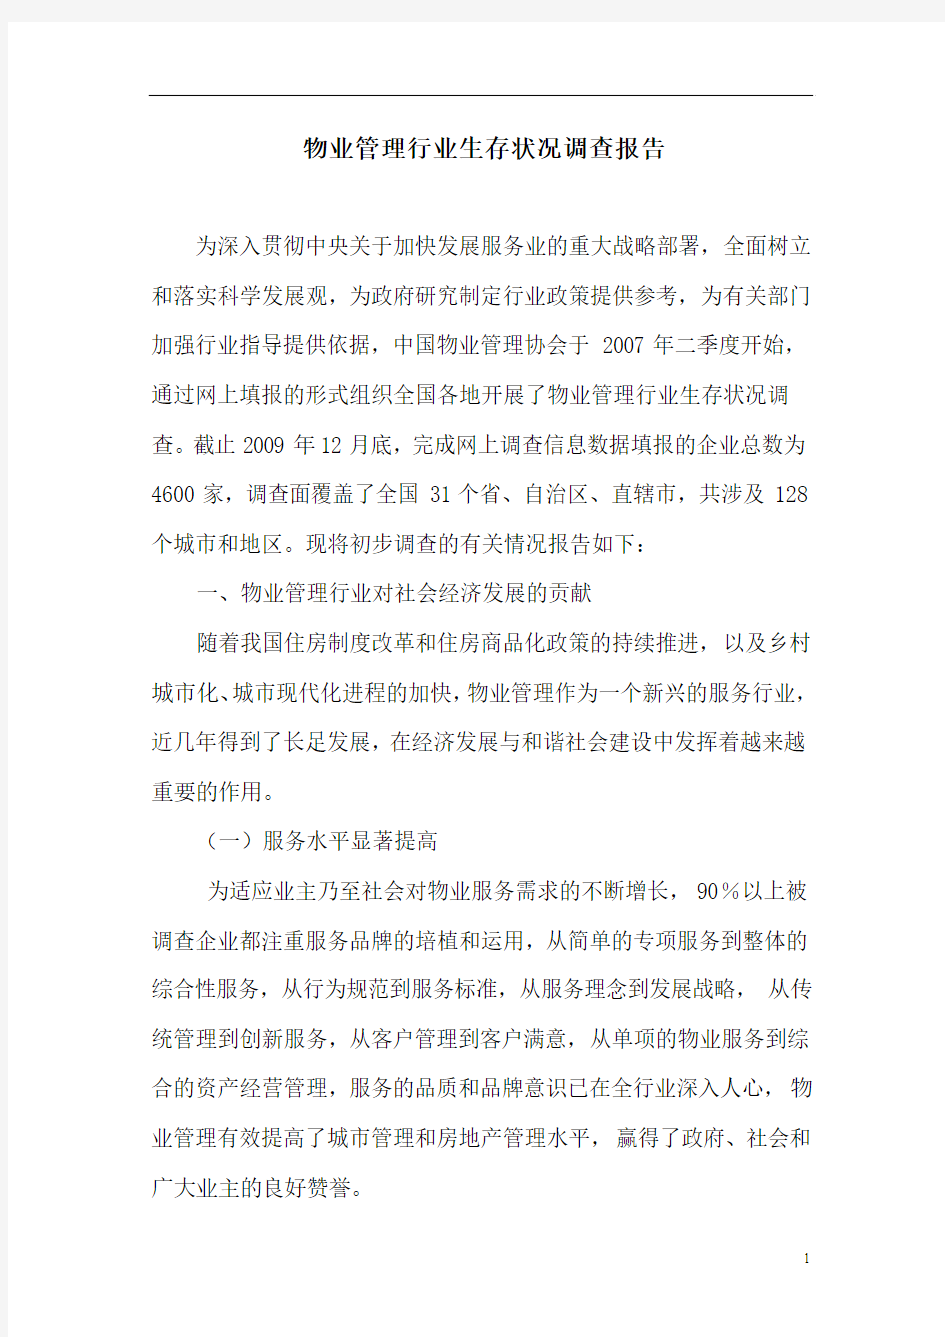 中国物业管理行业生存状况调查报告.